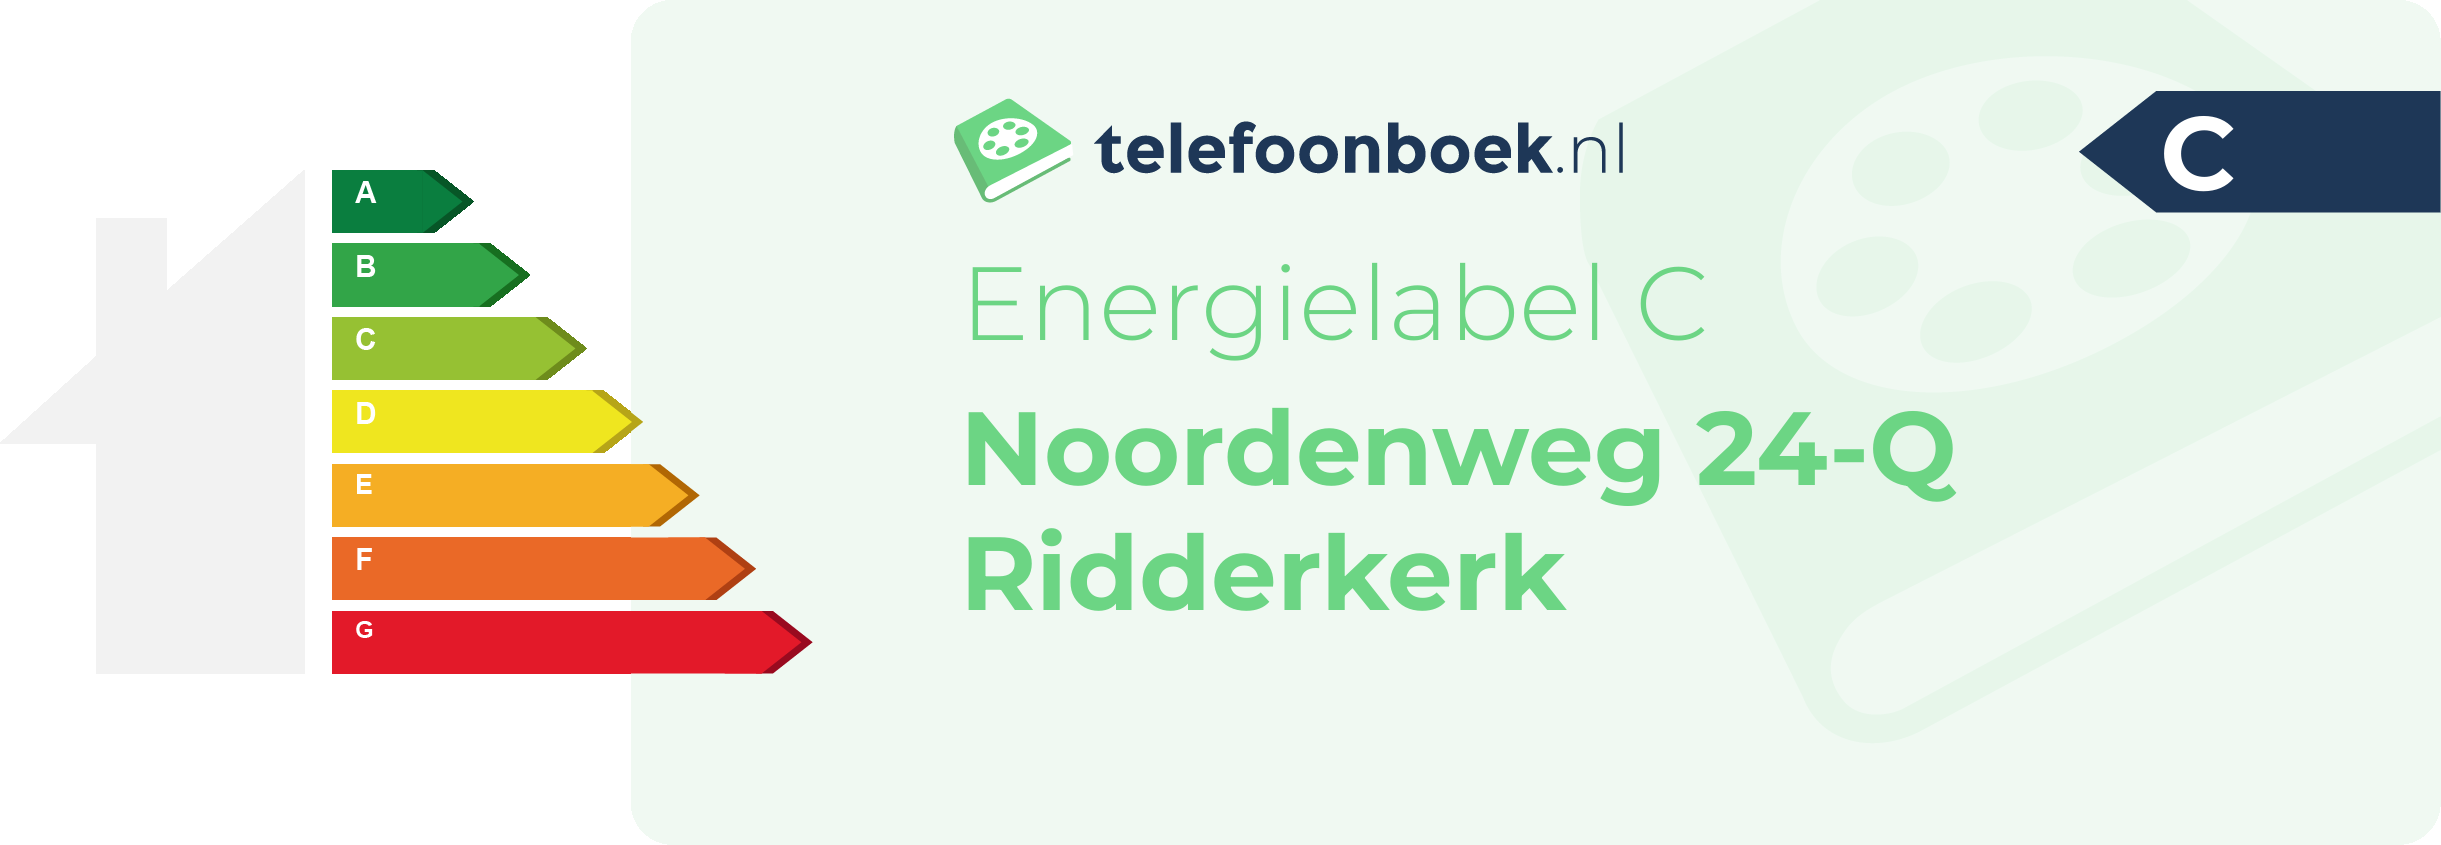 Energielabel Noordenweg 24-Q Ridderkerk